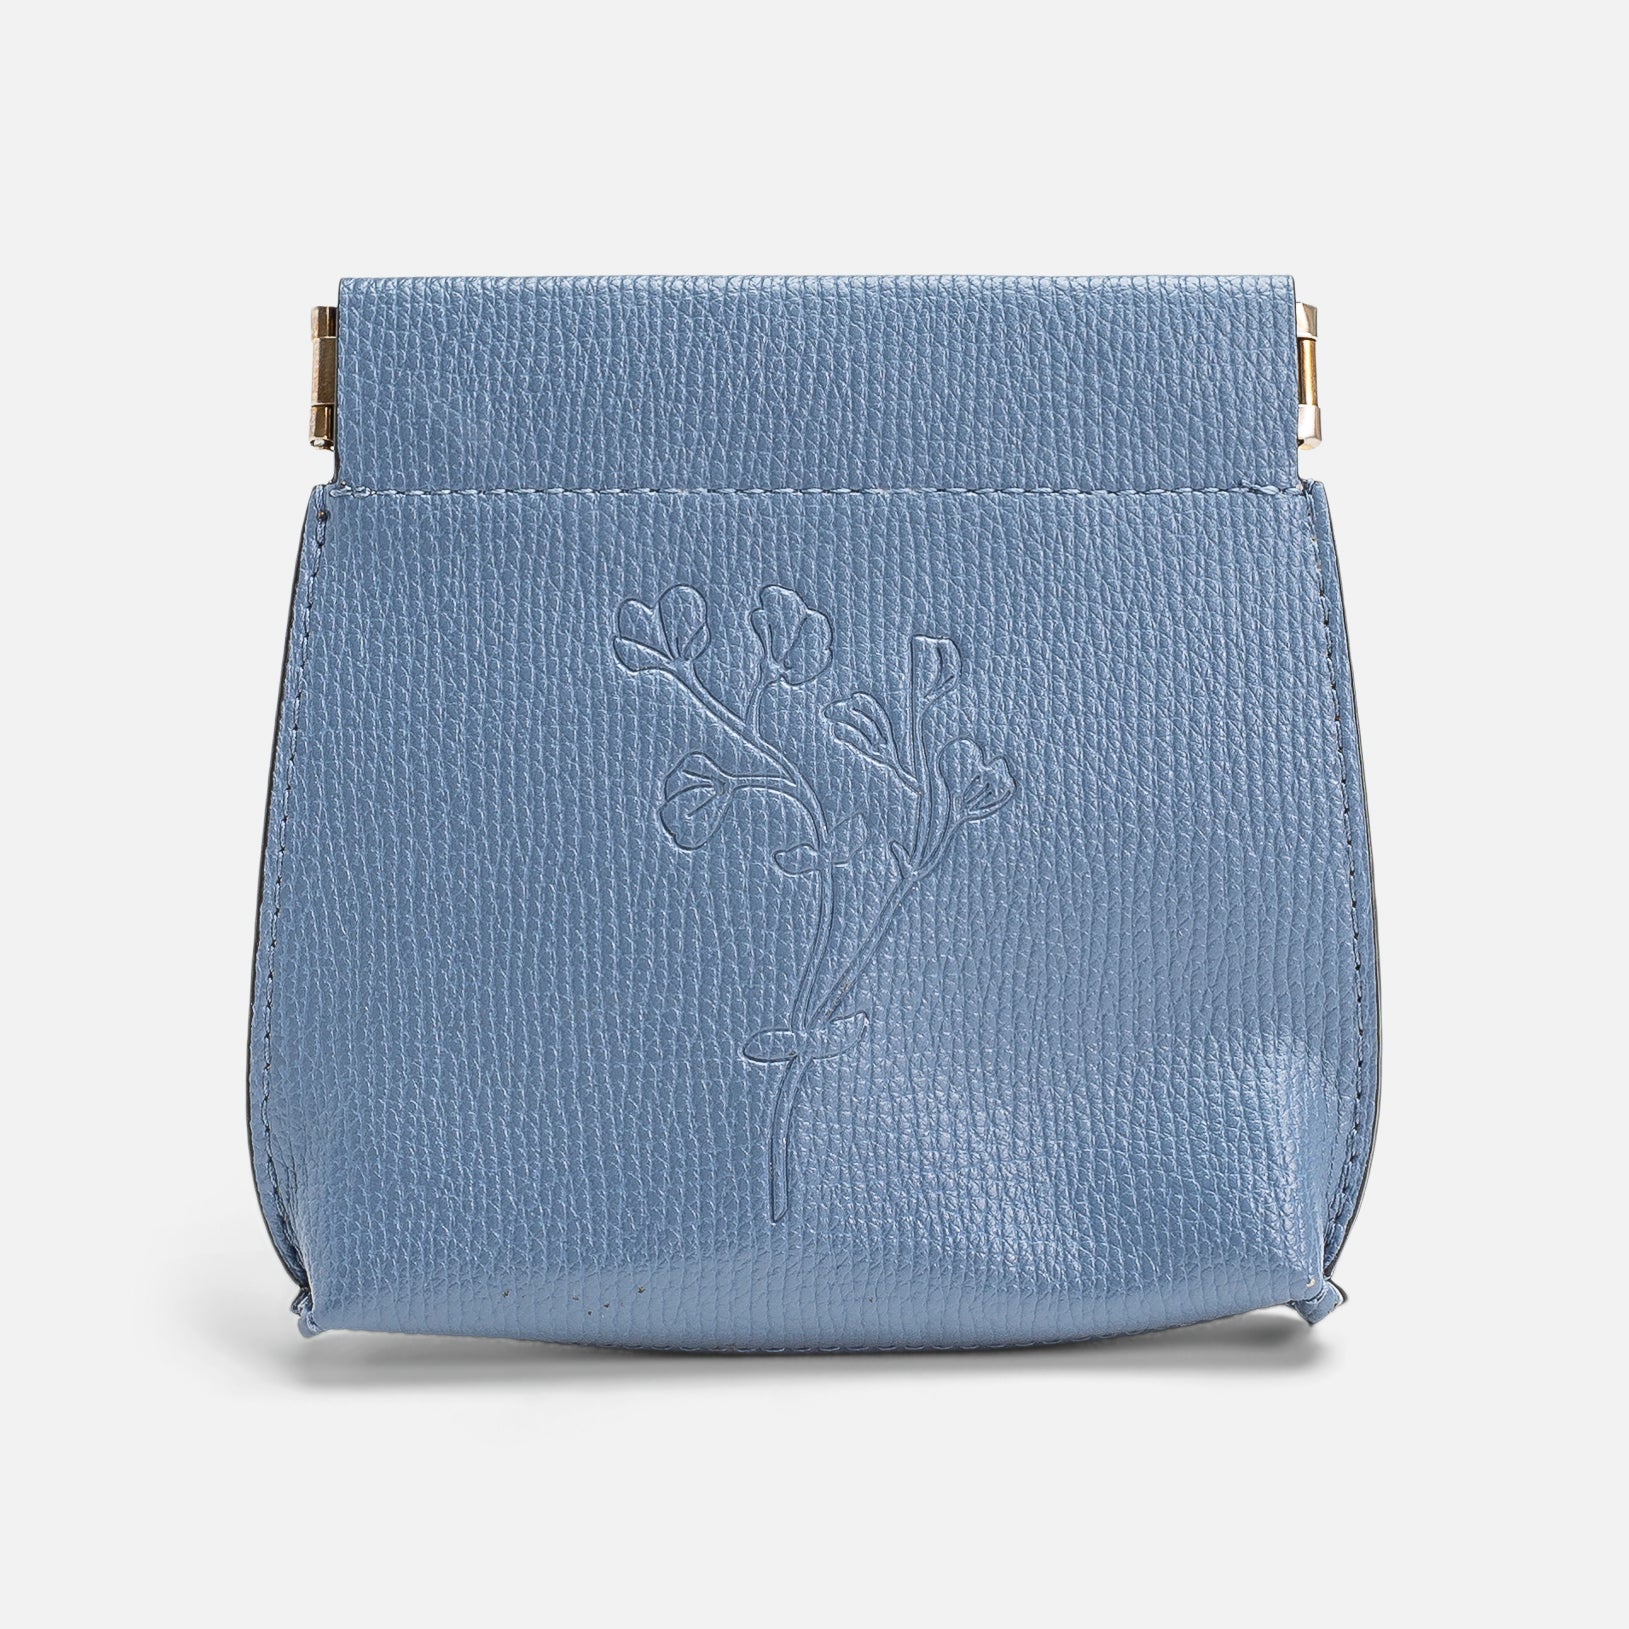 Porte-monnaie en similicuir bleu avec fermeture à pression et motif de fleurs